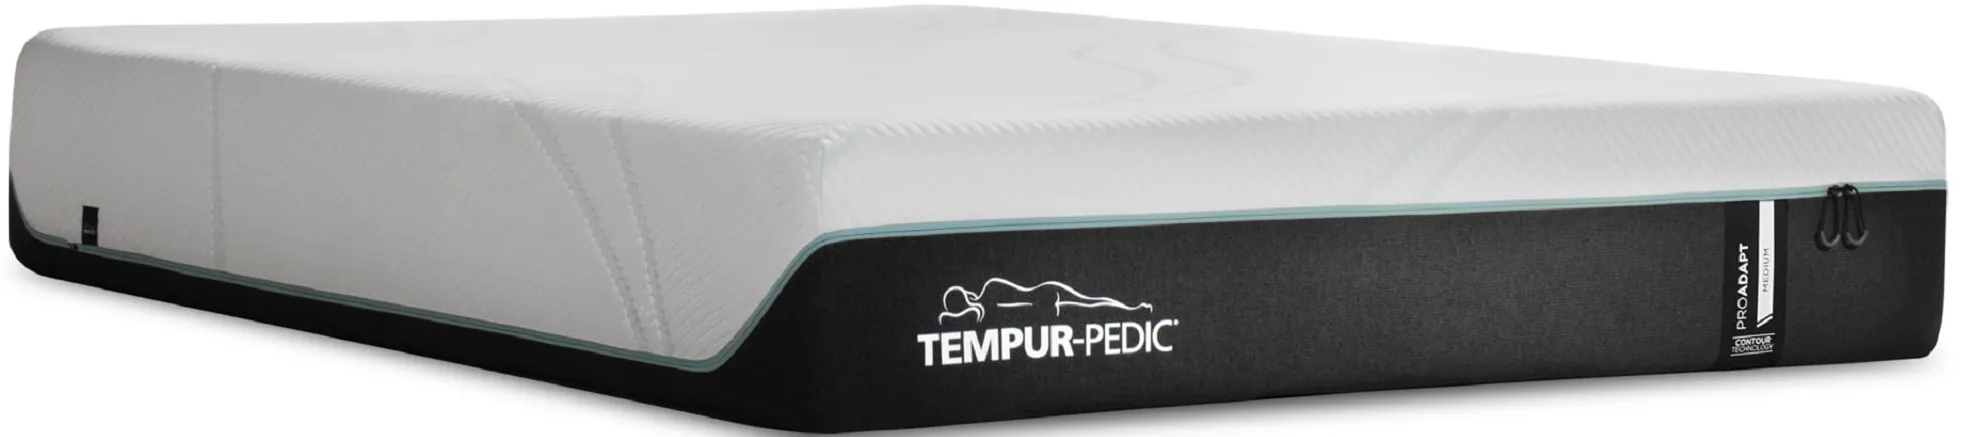 TEMPUR-Pro Adapt Medium King Mattress